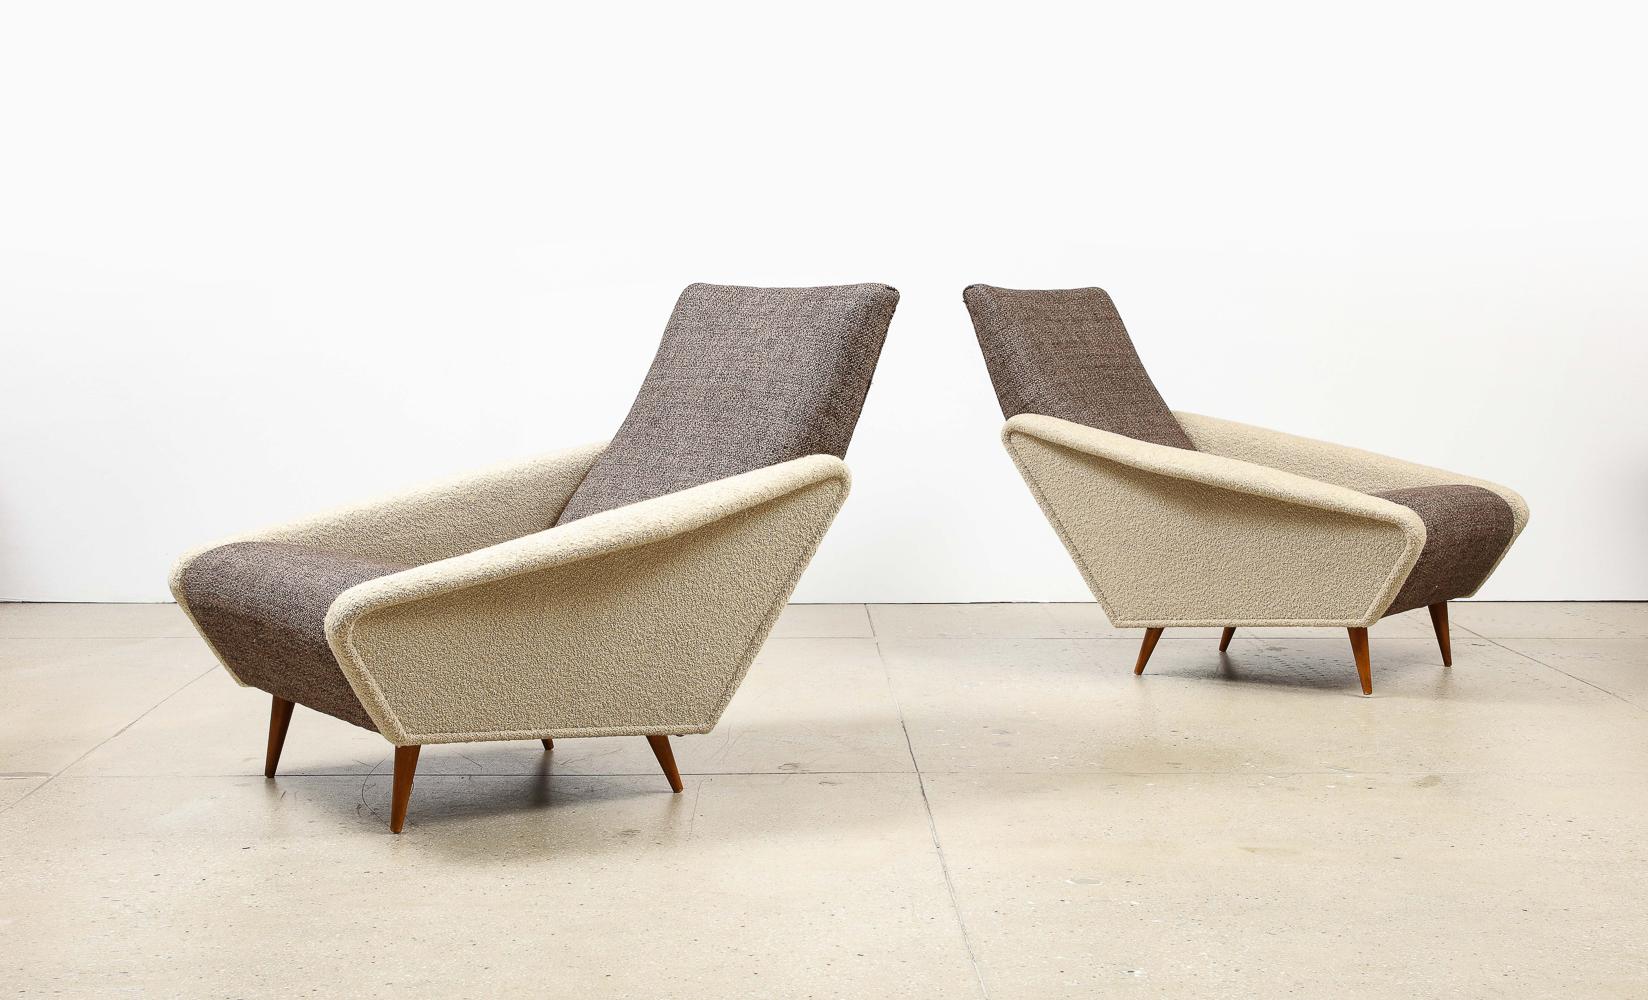 Modell Nr. 807A Distex Lounge Chairs von Gio Ponti für Cassina.  Nussbaum, Stoff. Ein seltenes und ikonisches Modell.  Der Distex-Stuhl wurde erstmals 1954 auf der X. Triennale in Mailand vorgestellt.